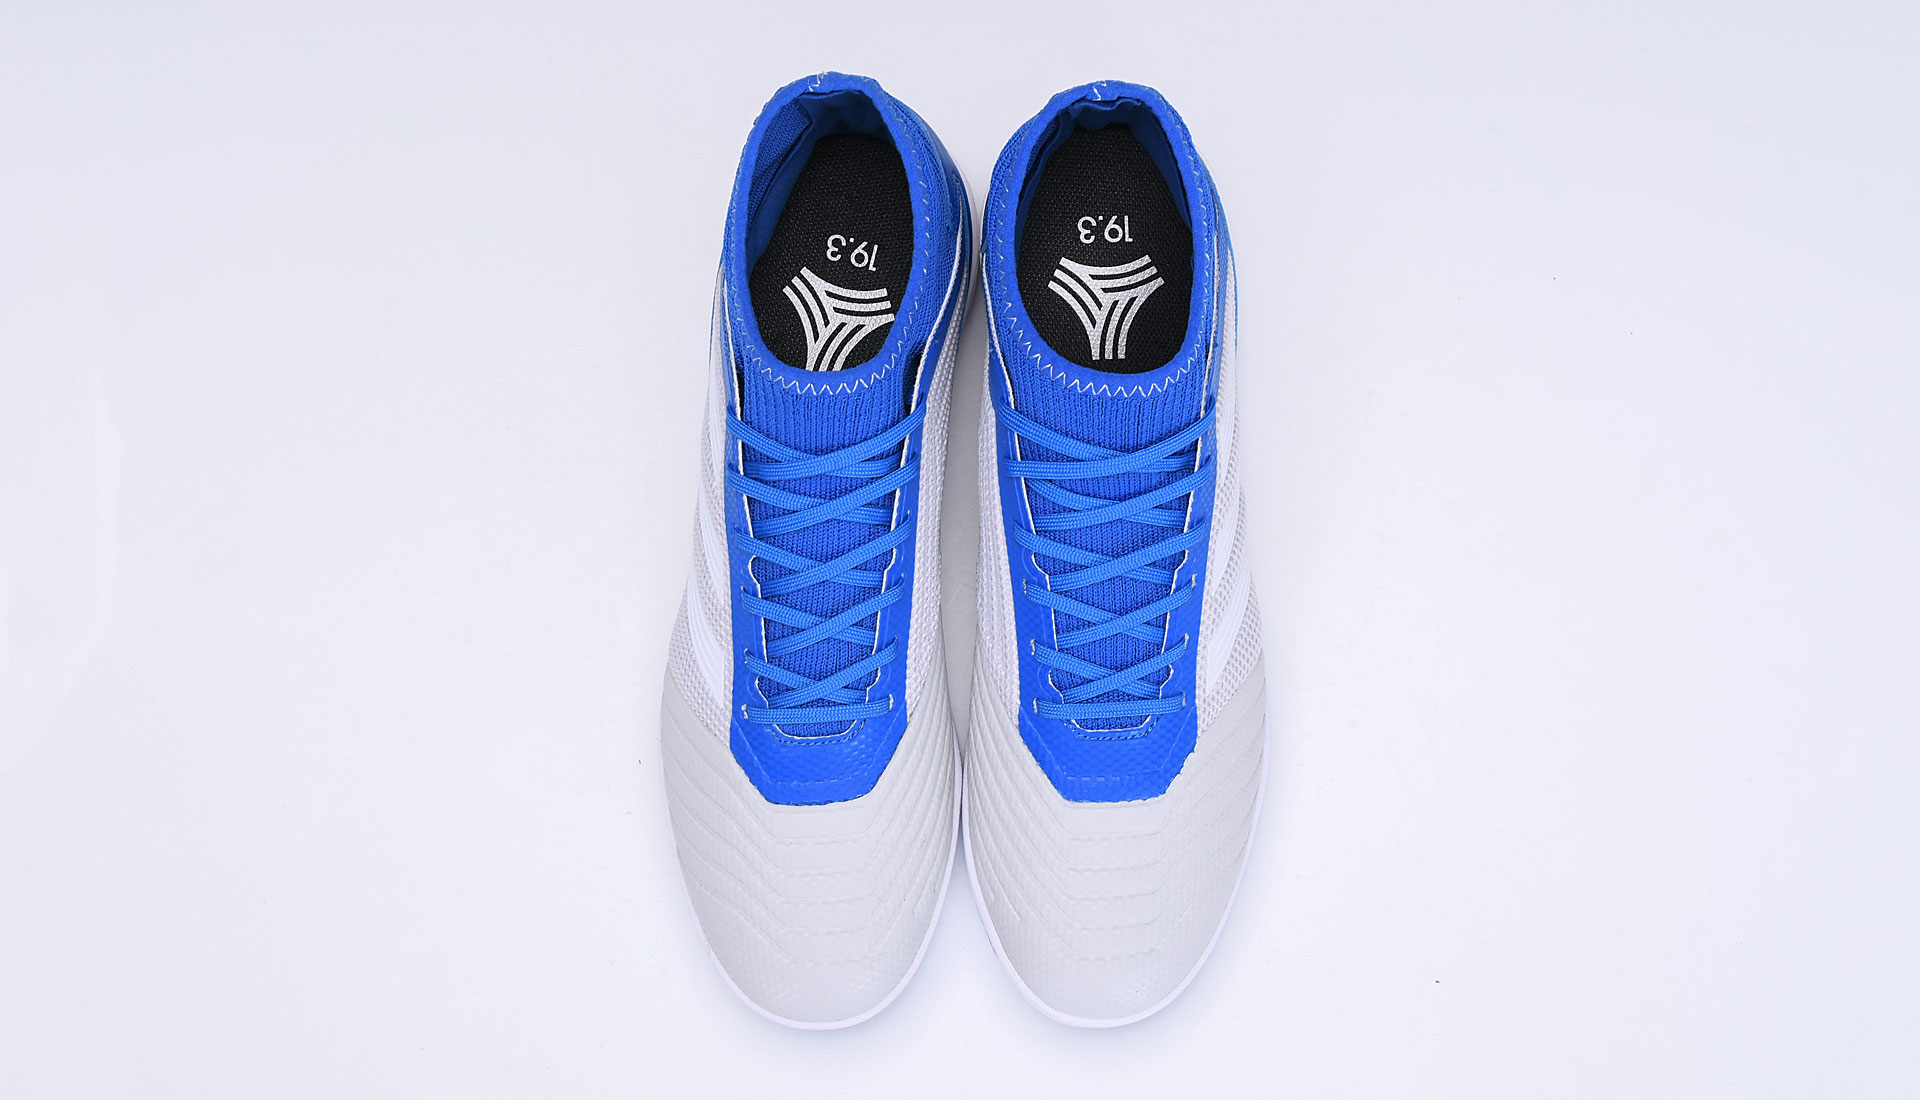 Adidas PREDATOR 19.3 TF Turf 'Grey Blue' BC0555 - Premium Performance Football Shoes